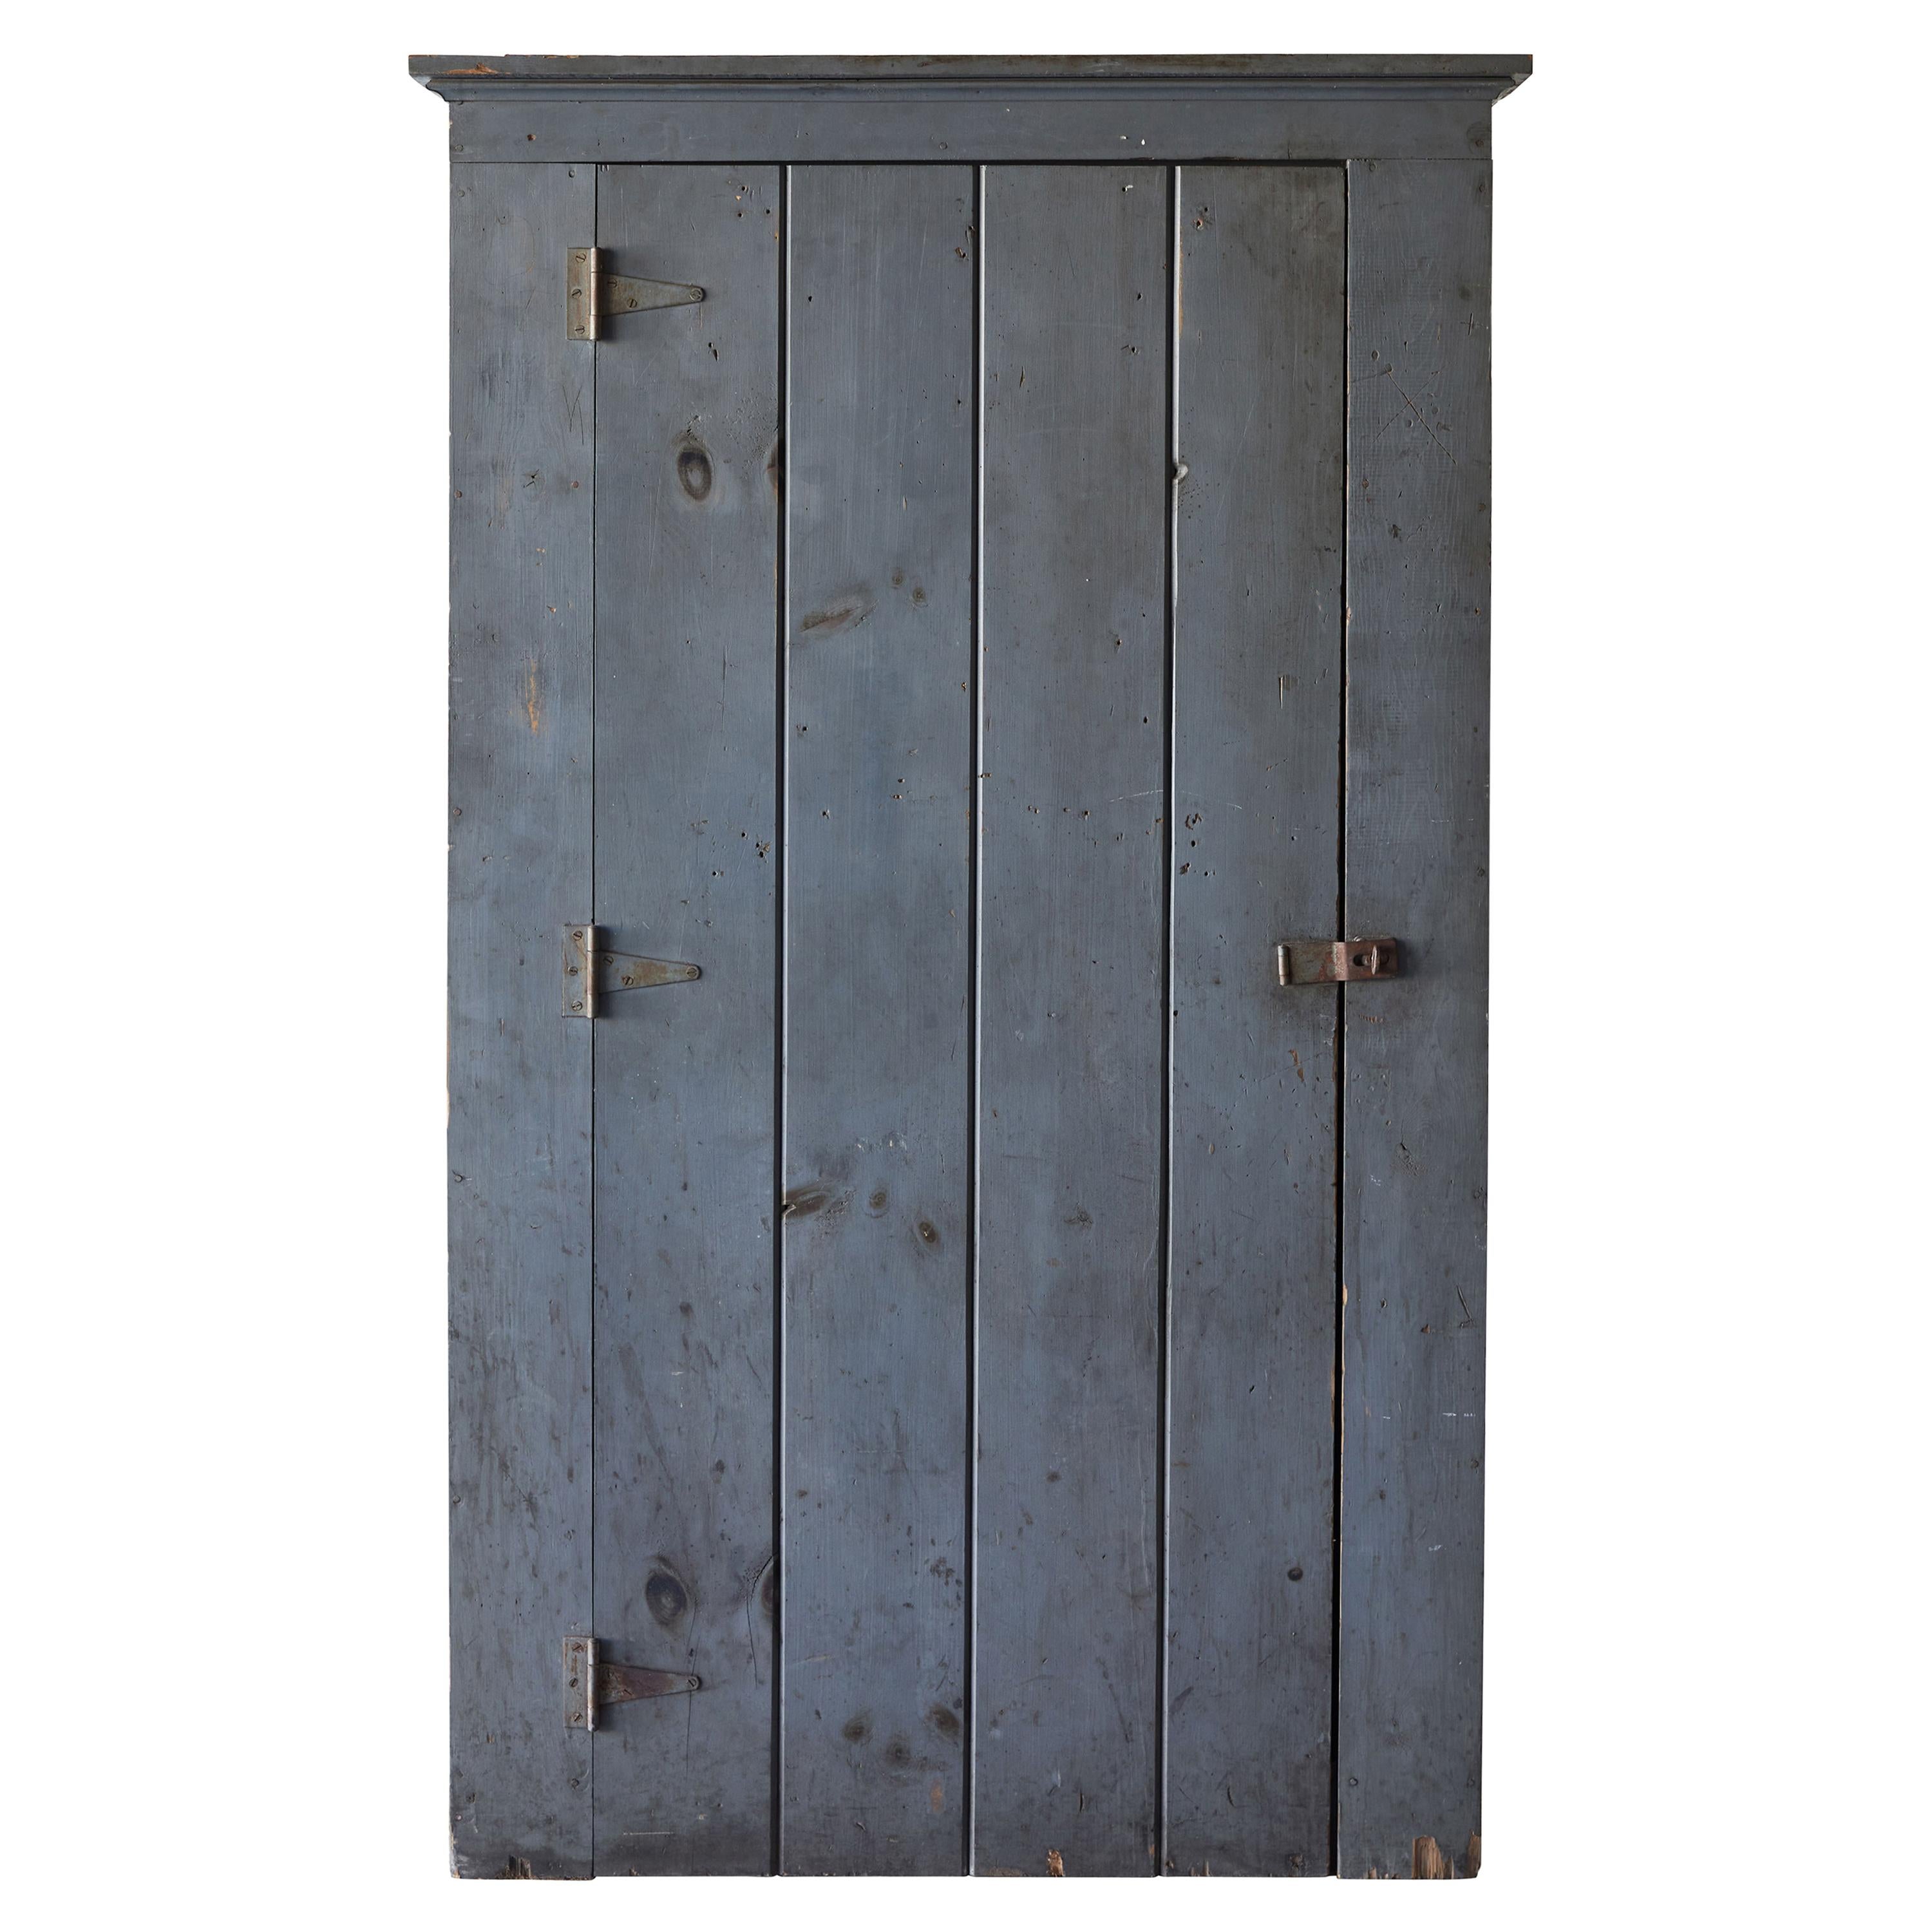 Tall Antique French Single Door Pantry Door European Entry Door A127 Distressed Old Wood Door Raised Panel Door European Door